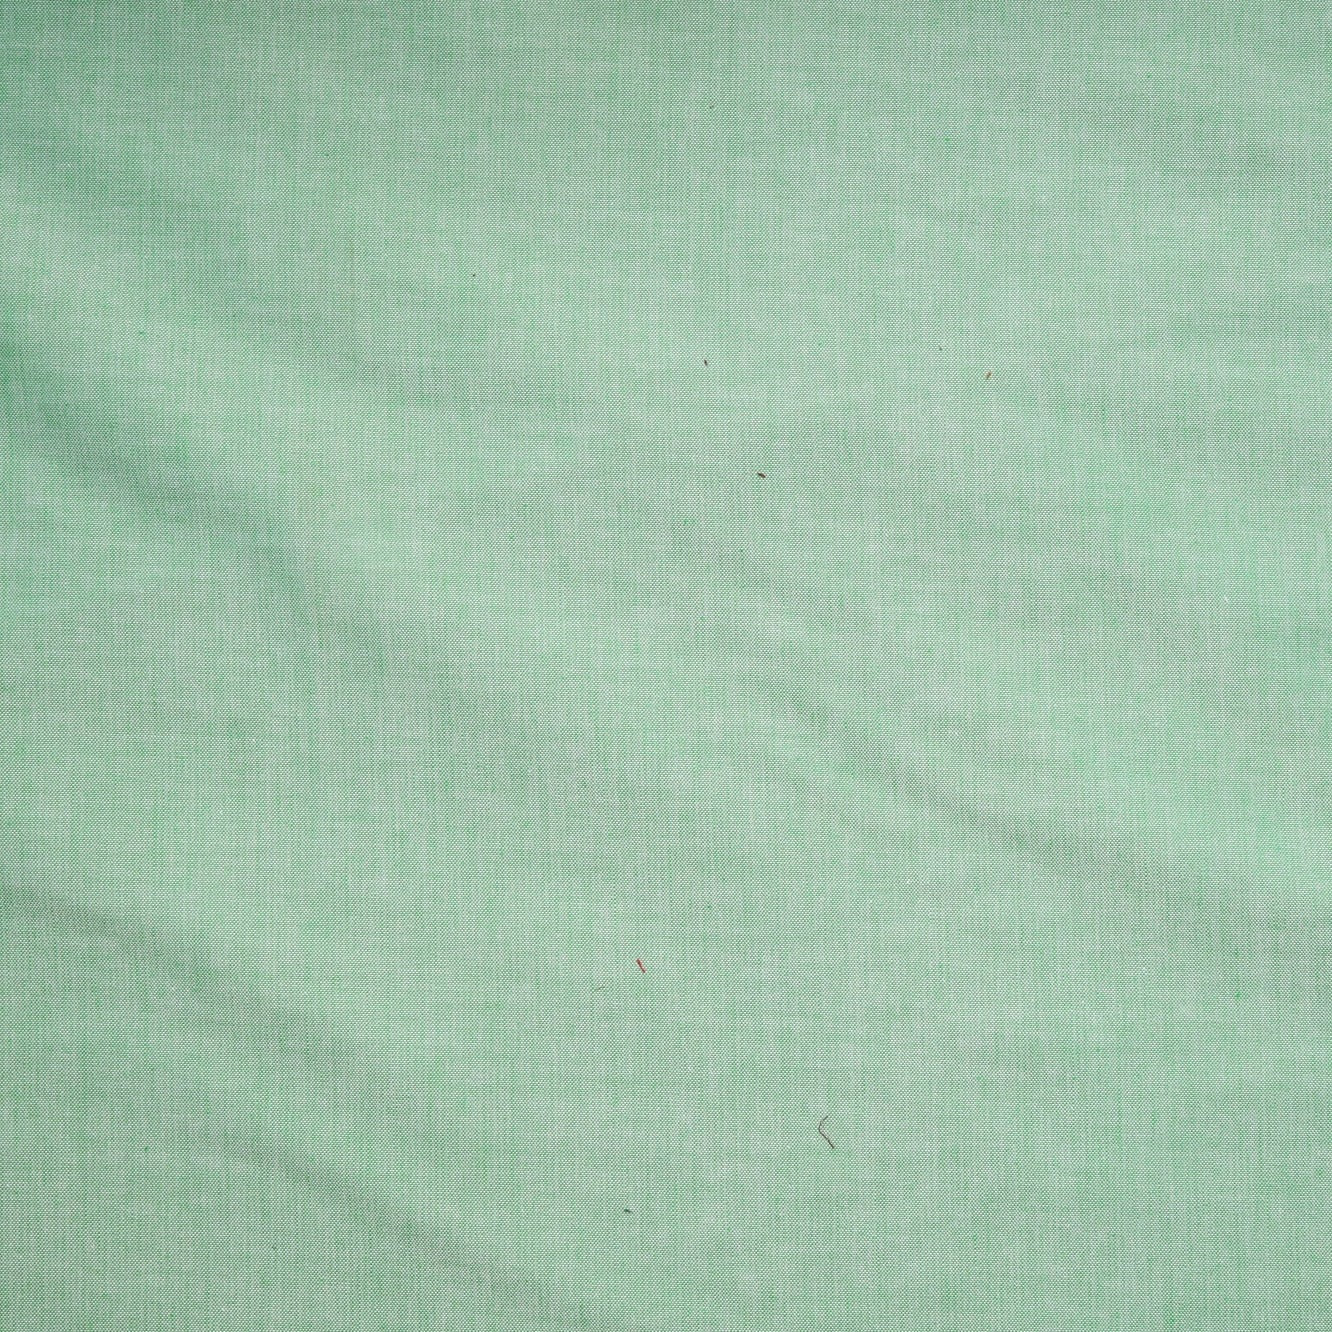 Green Fabric, Light Green Fabric, Cotton Shot, Melon, Solid Cotton Fabric,  Cotton Basics, Denim Print Fabric, by Benartex, 9636-49